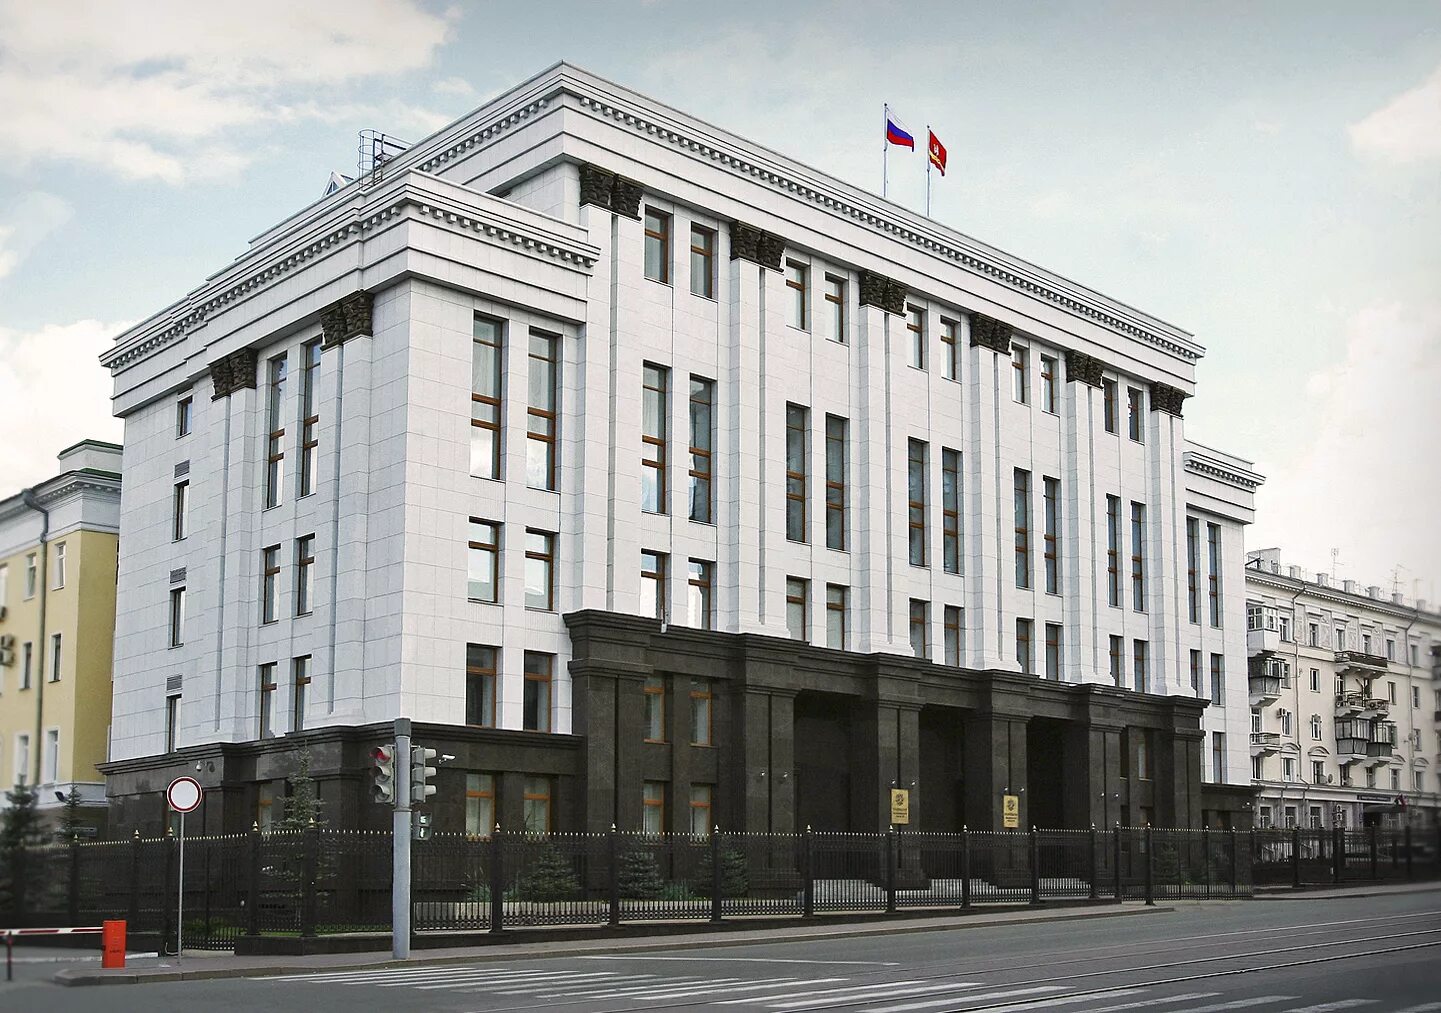 Государственные учреждения челябинской области